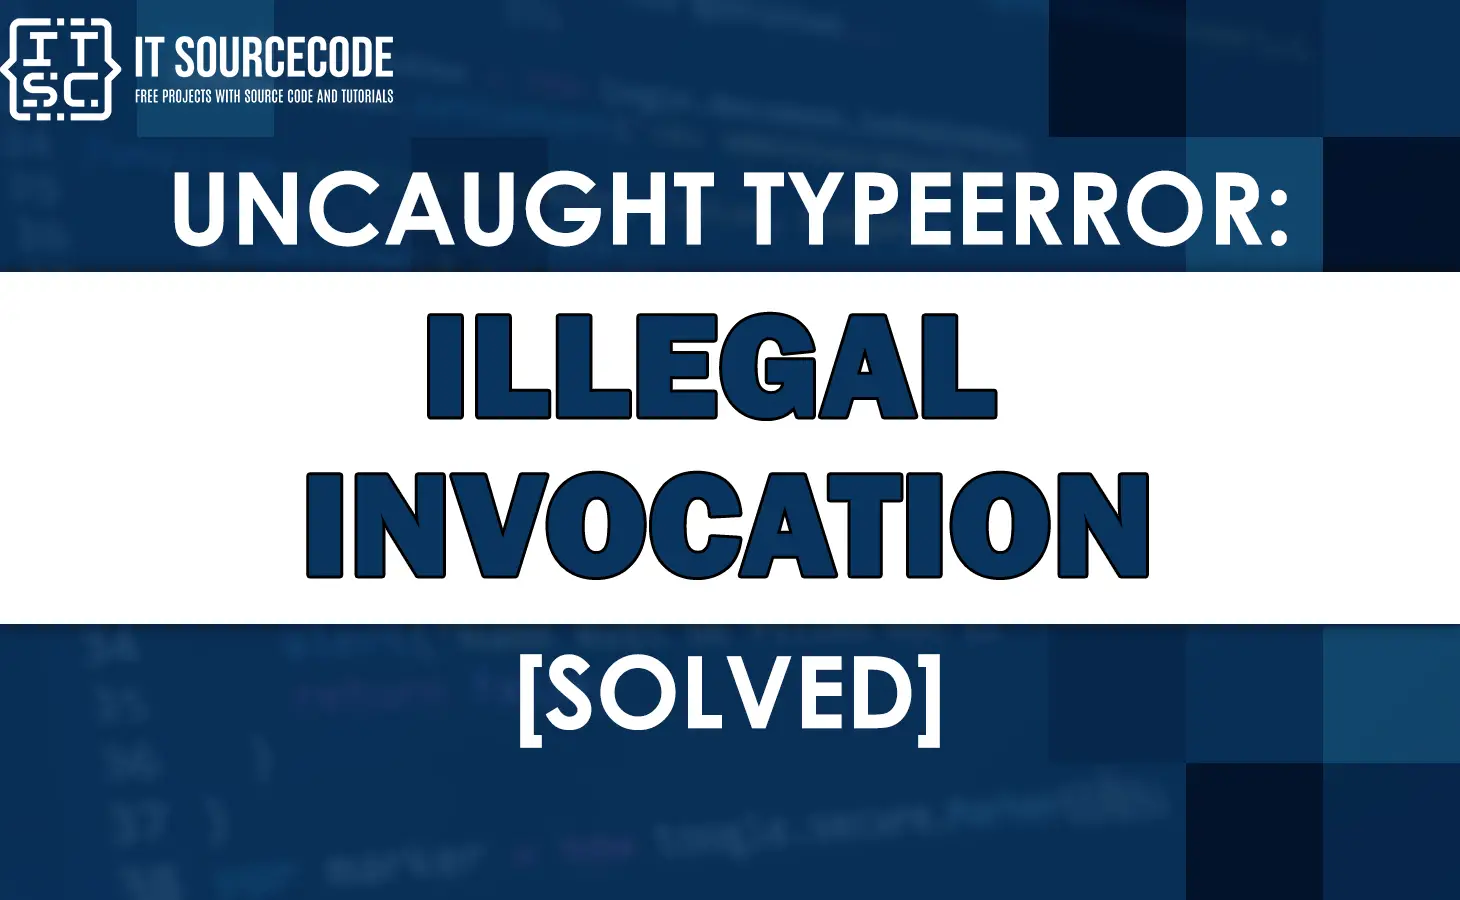 Uncaught typeerror: illegal invocation